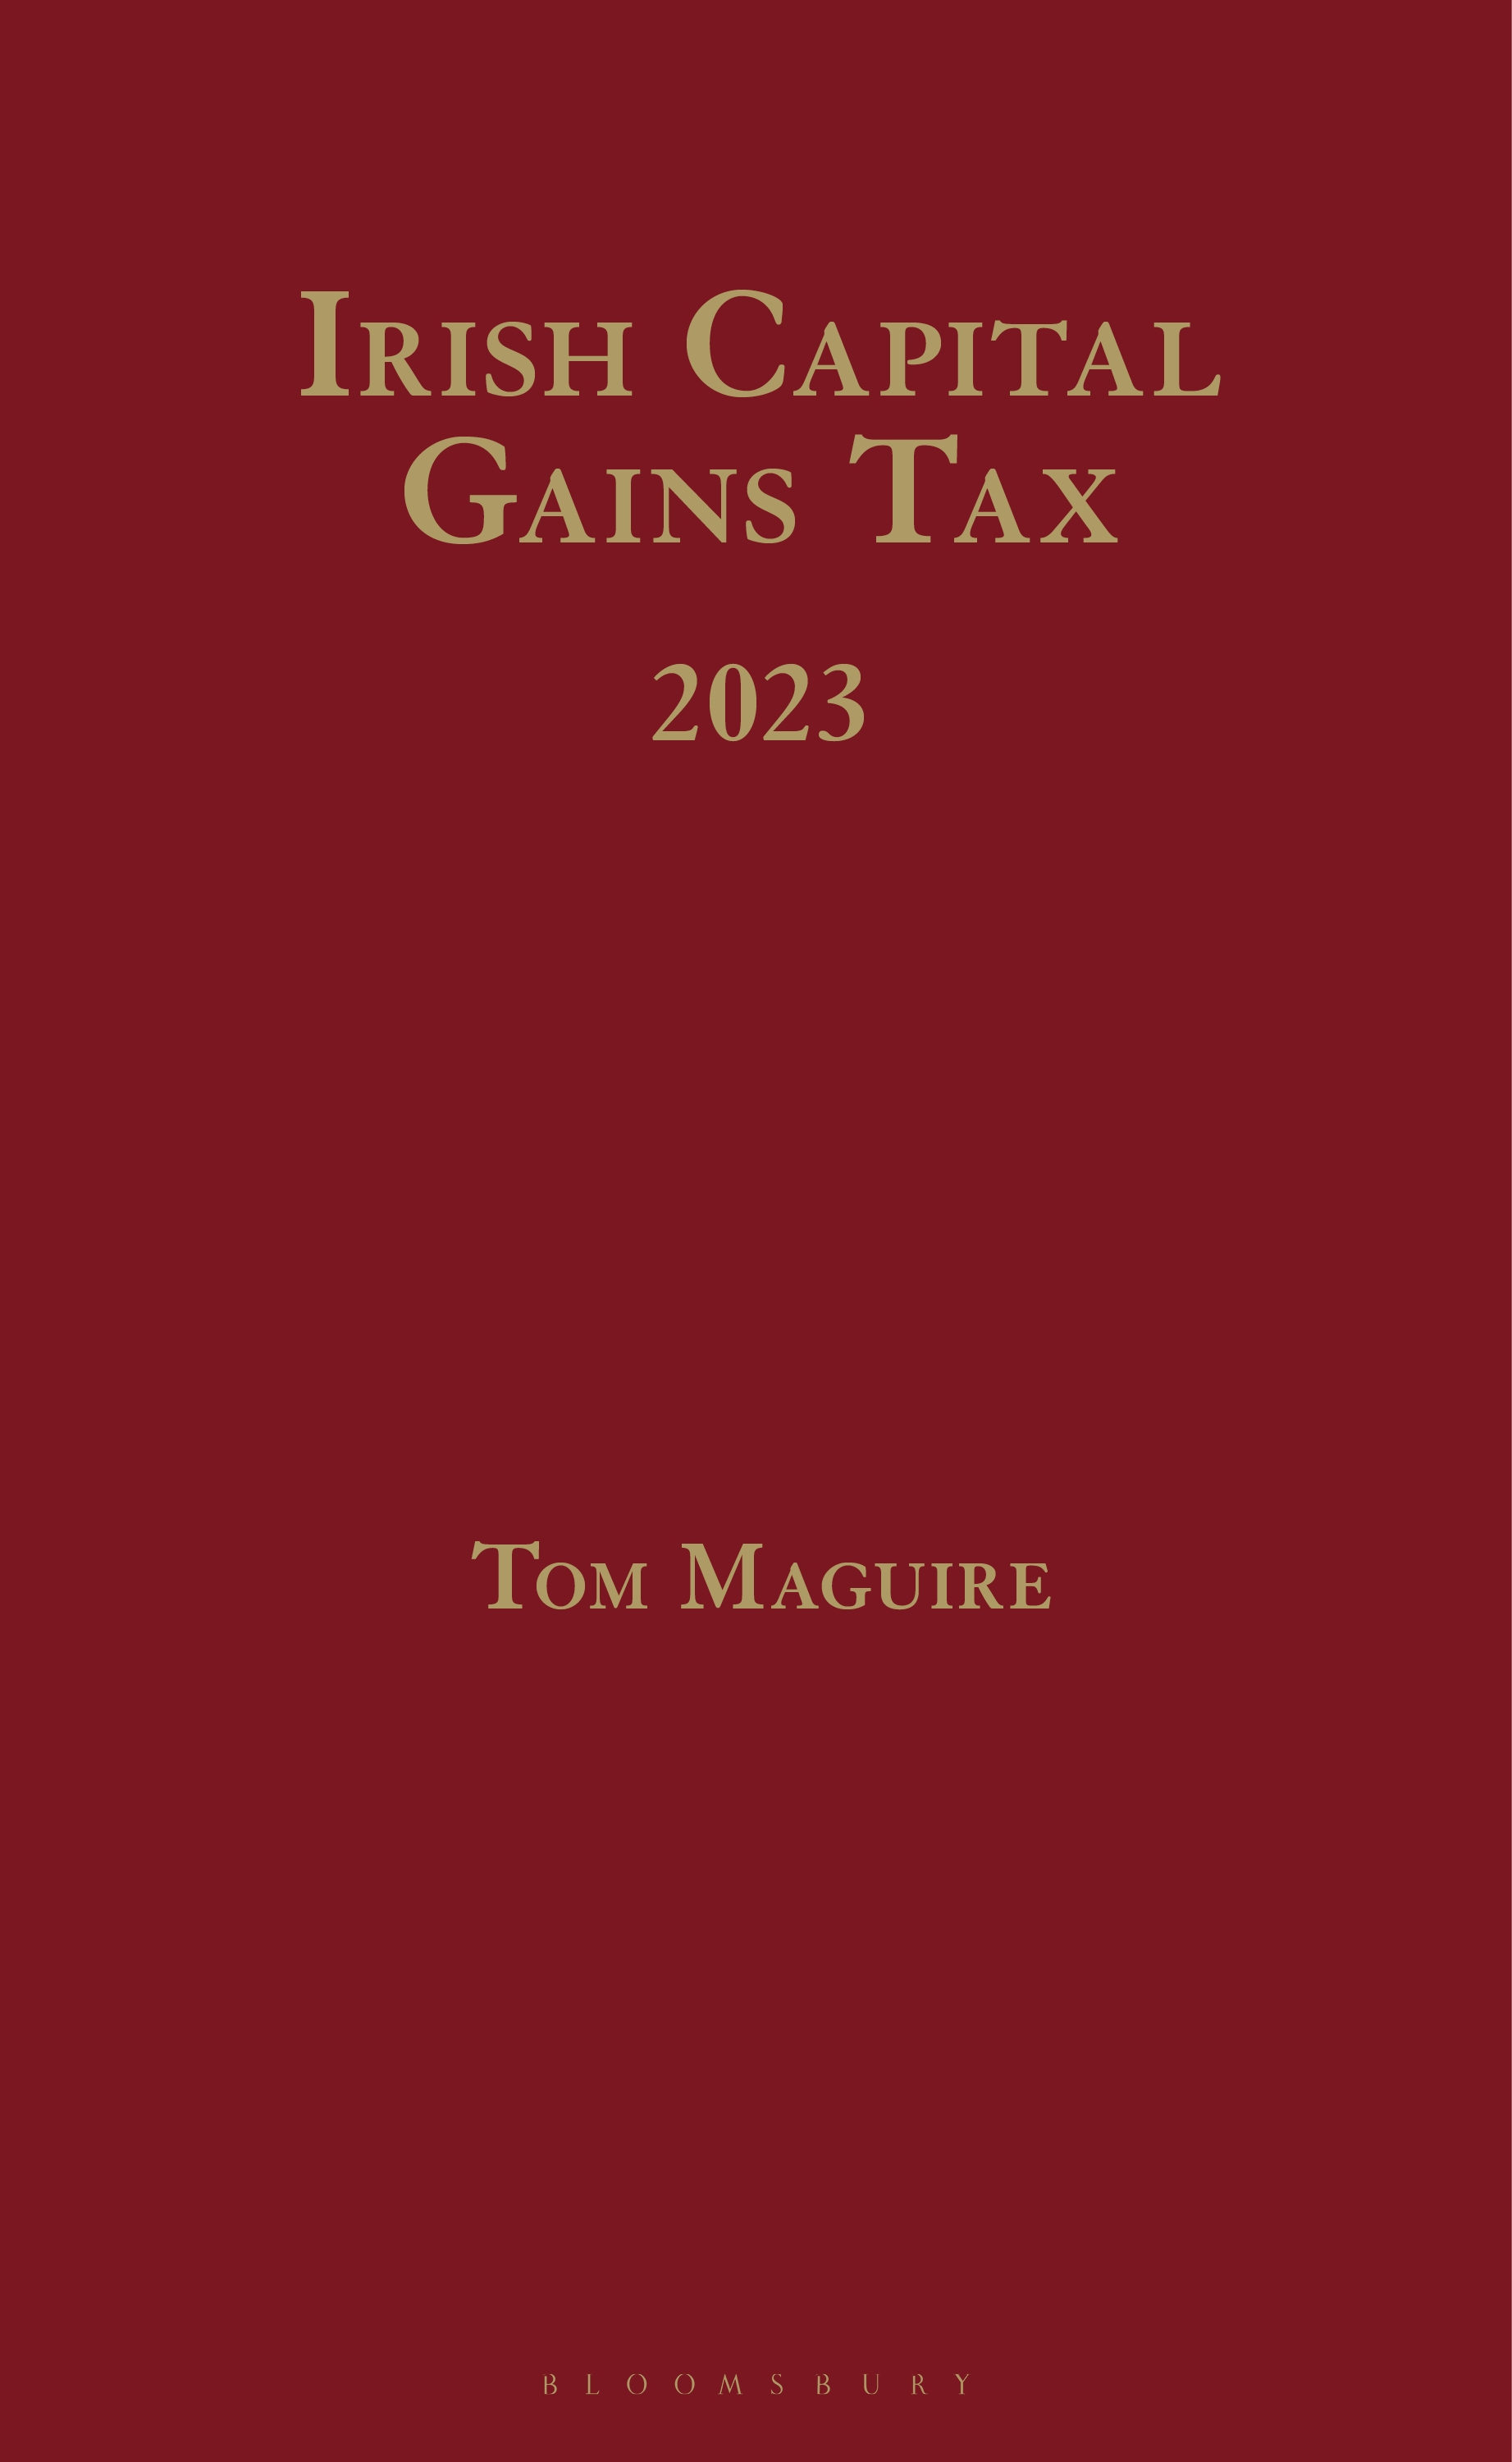 Irish Capital Gains Tax 2023 book jacket